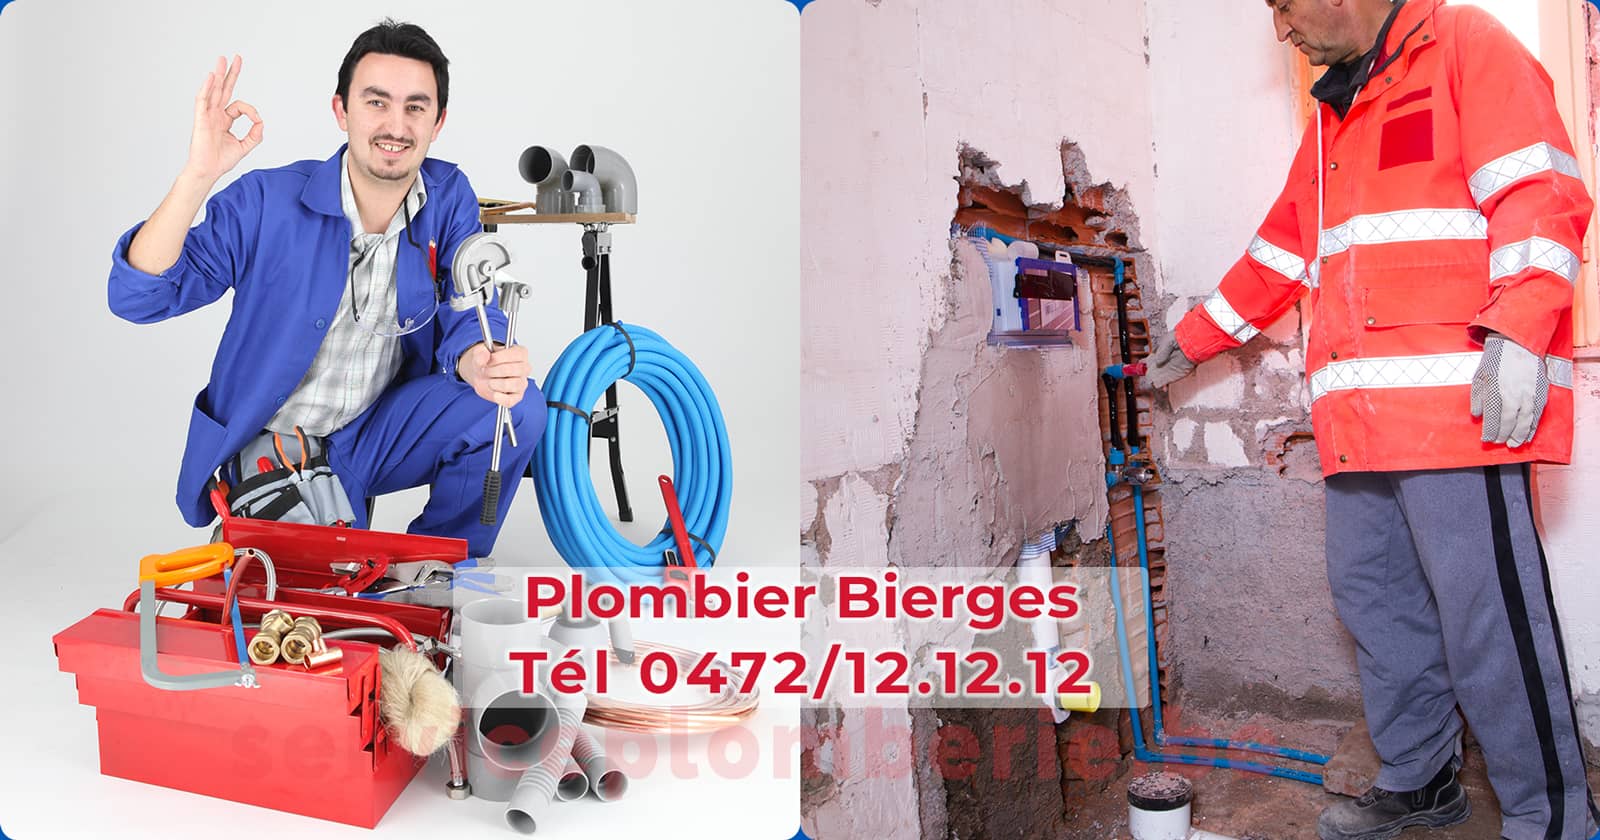 Plombier Bierges Agréé Professionnel Service Plomberie Tél 0472/12.12.12